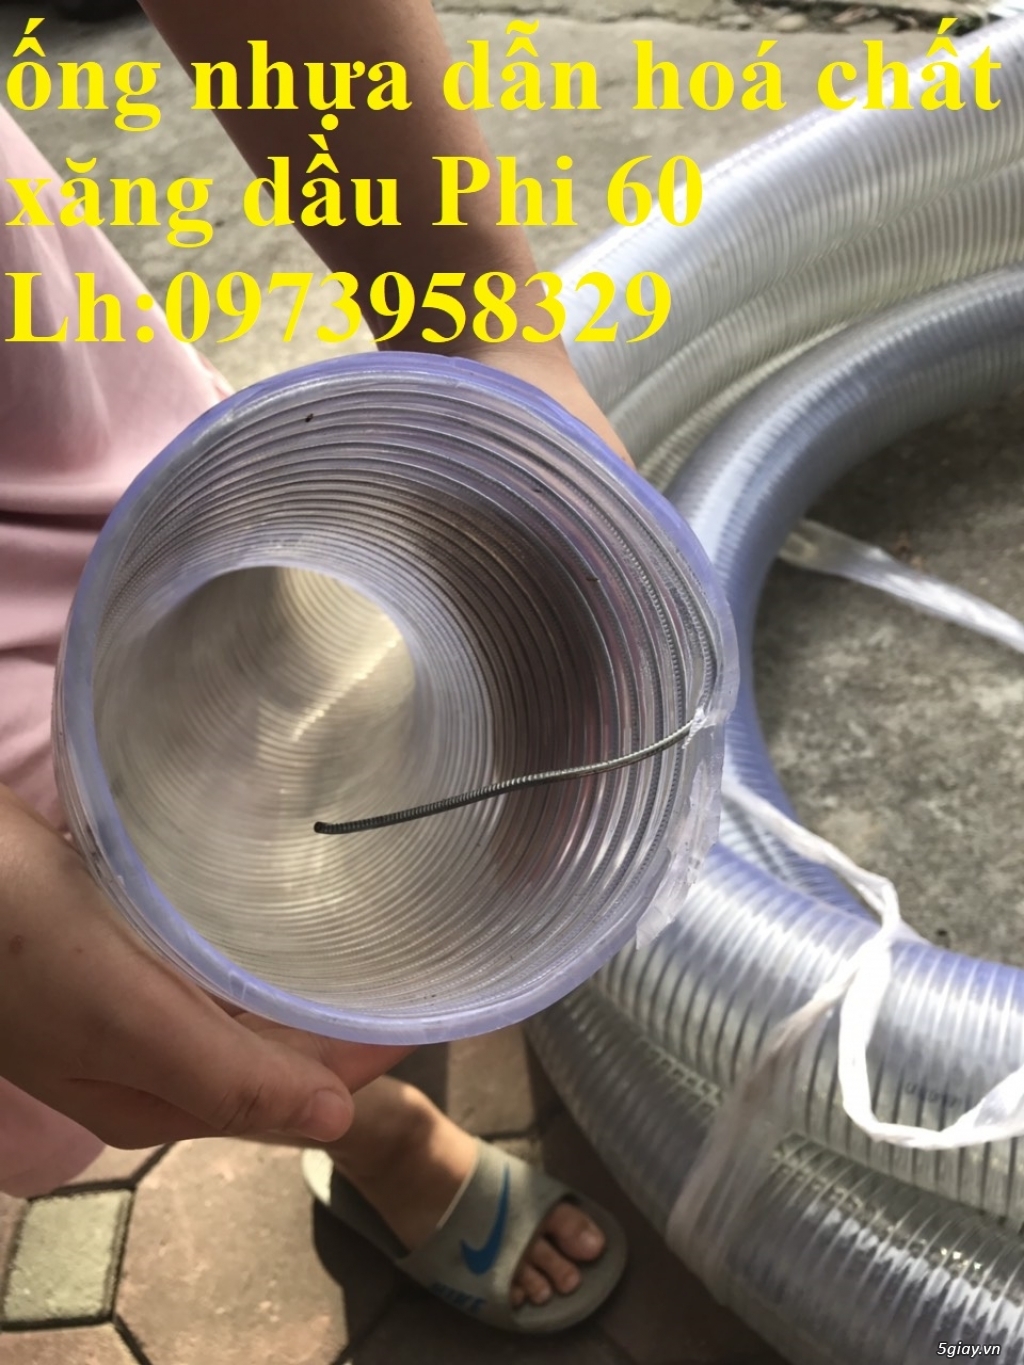 đại lý cung cấp ống nhựa lõi thép giá rẻ Phi 200 - giao hàng toàn quốc - 6